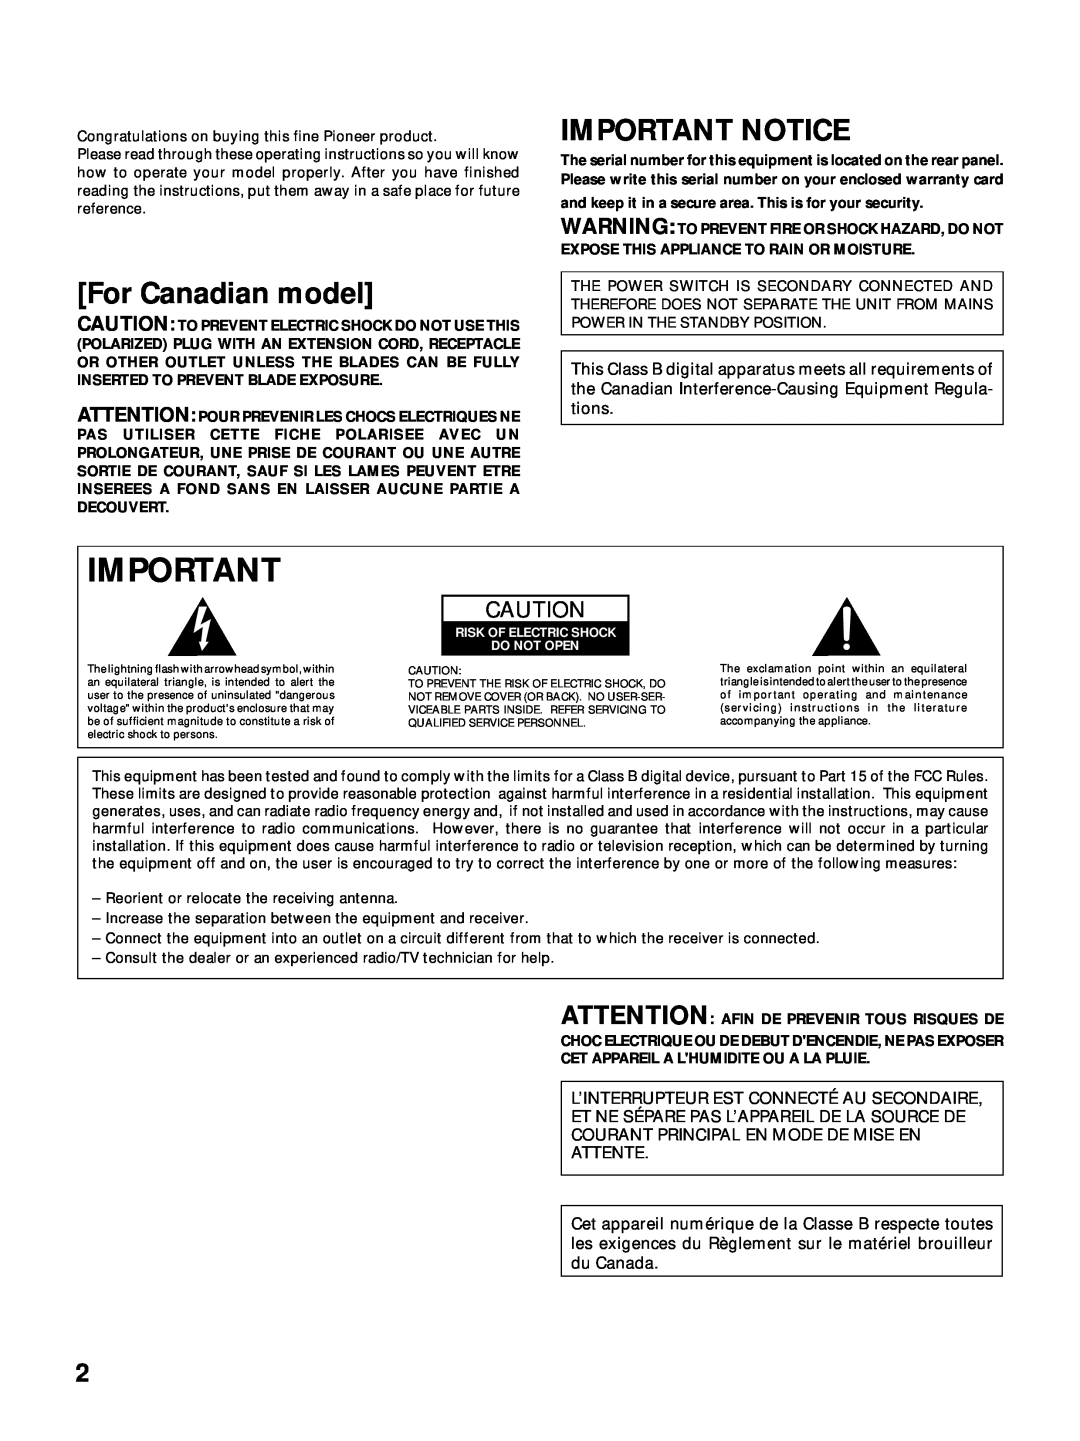 Pioneer VSX-24TX, VSX-27TX, VSX-26TX manual For Canadian model, Important Notice, L’Interrupteur Est Connecté Au Secondaire 